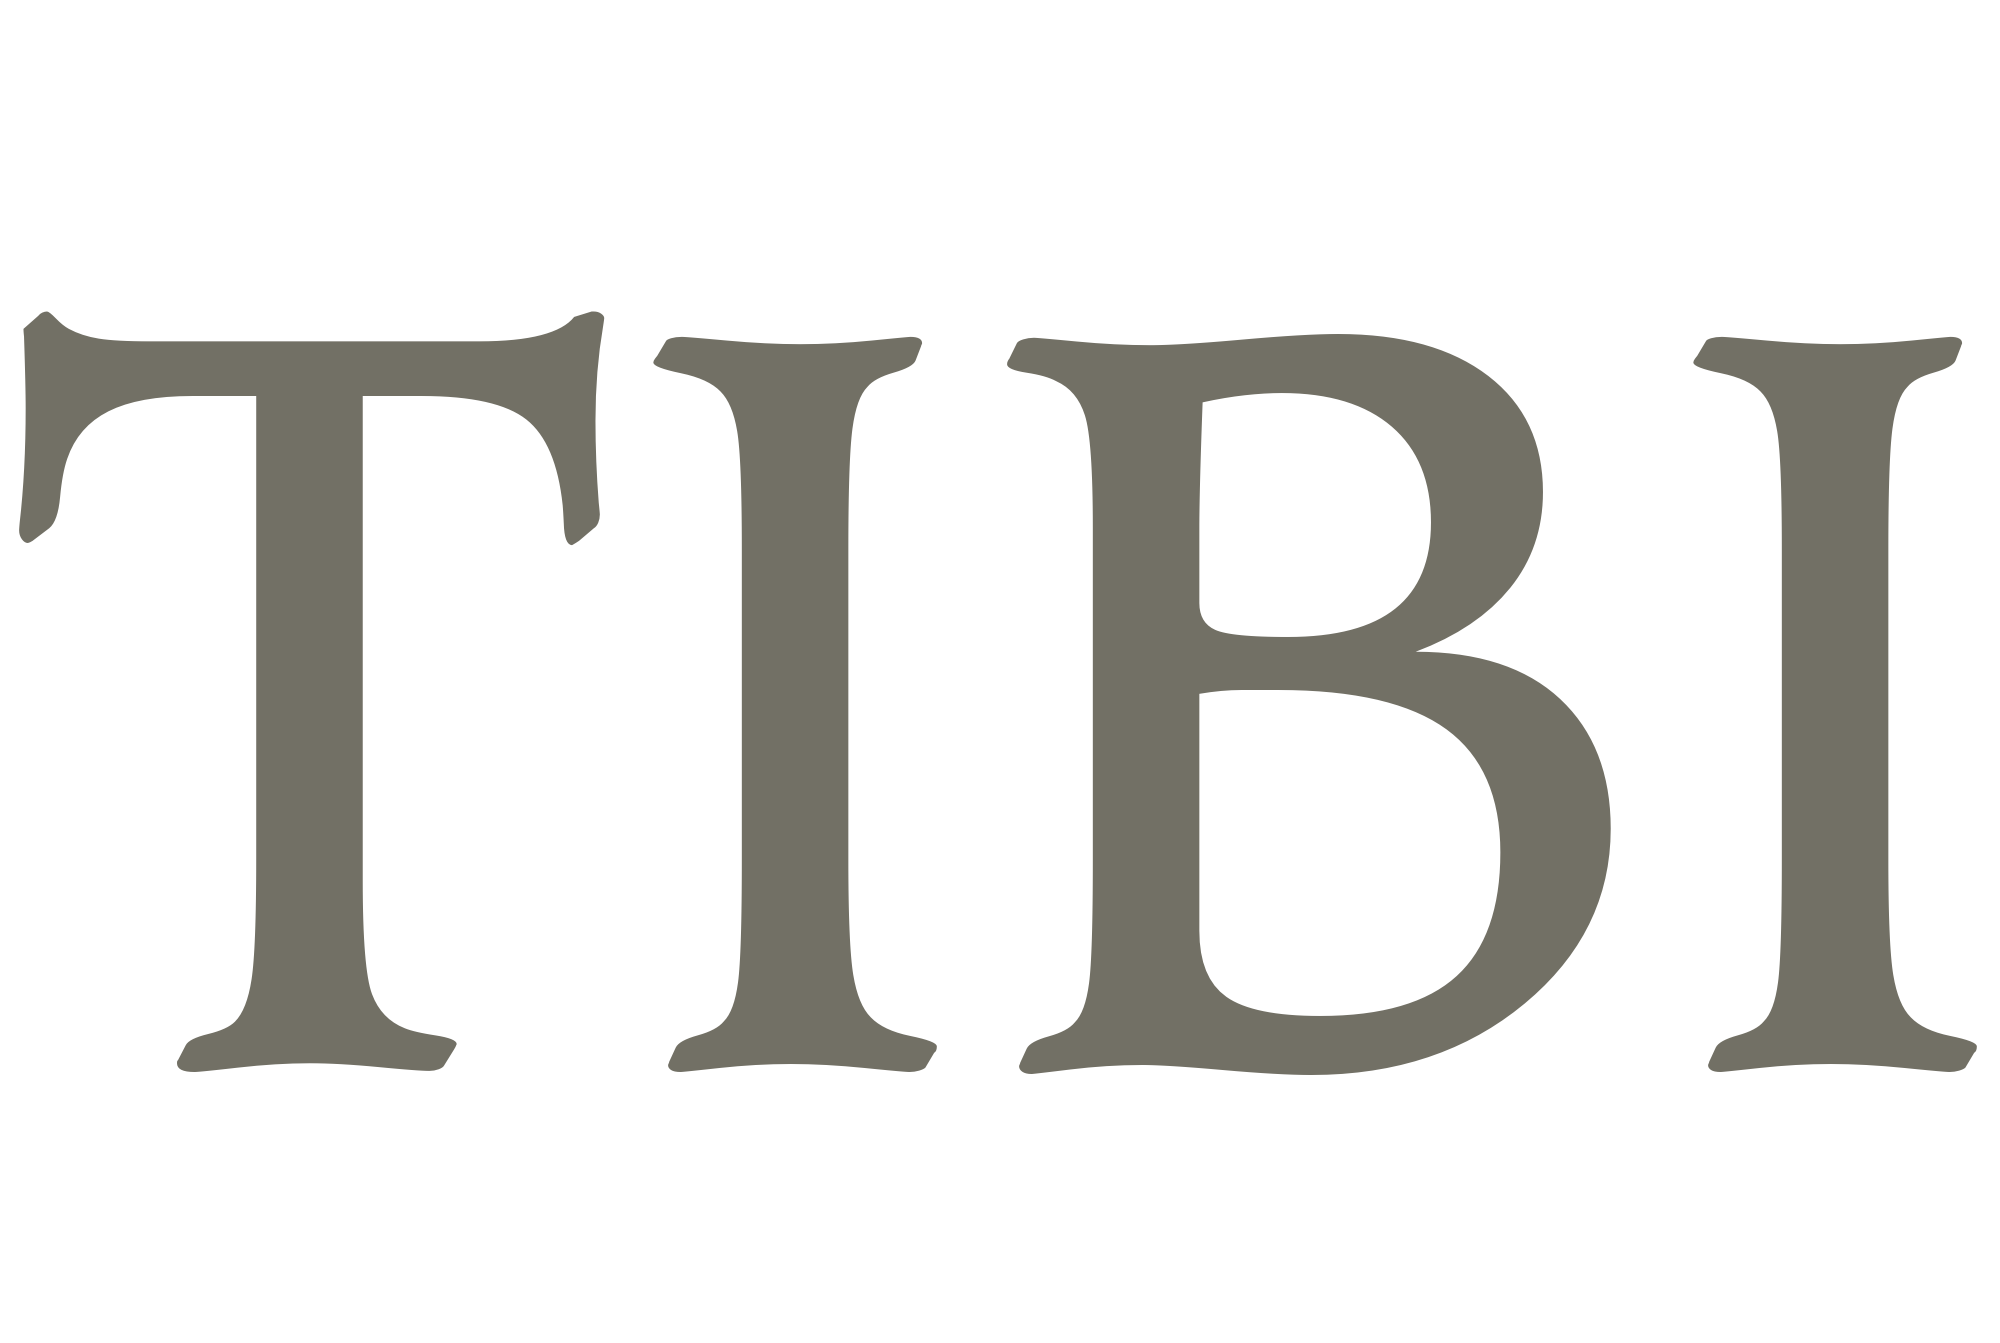 Tibi Logo - Tibi's Meaning of Tibi